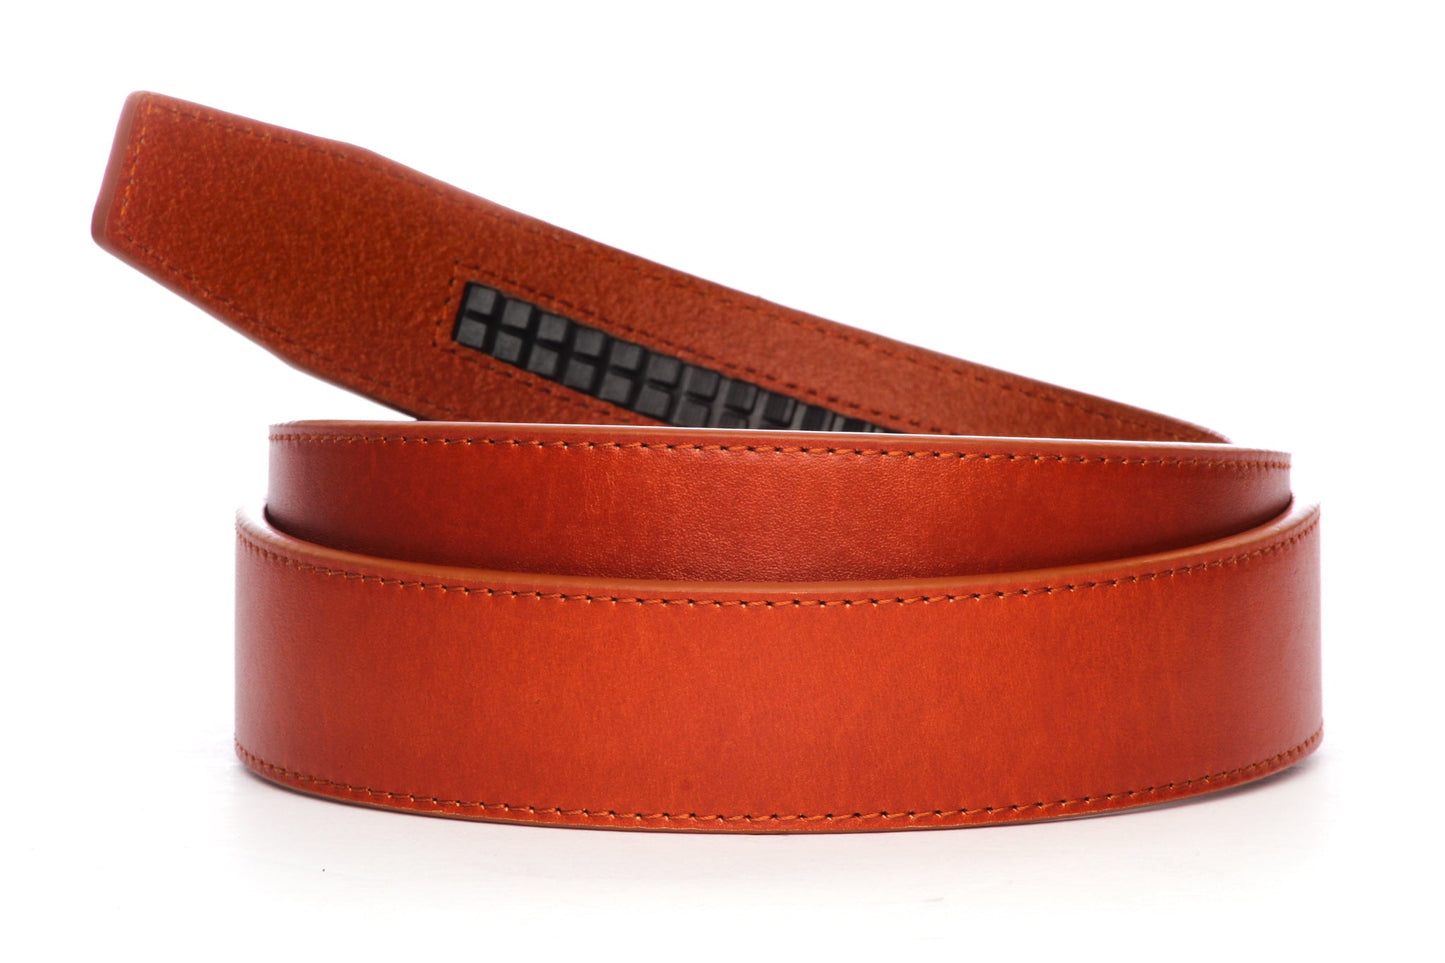 Leather Belt Strap - Men's Ratchet Belt - Saddle Tan Vegetable Tanned ...